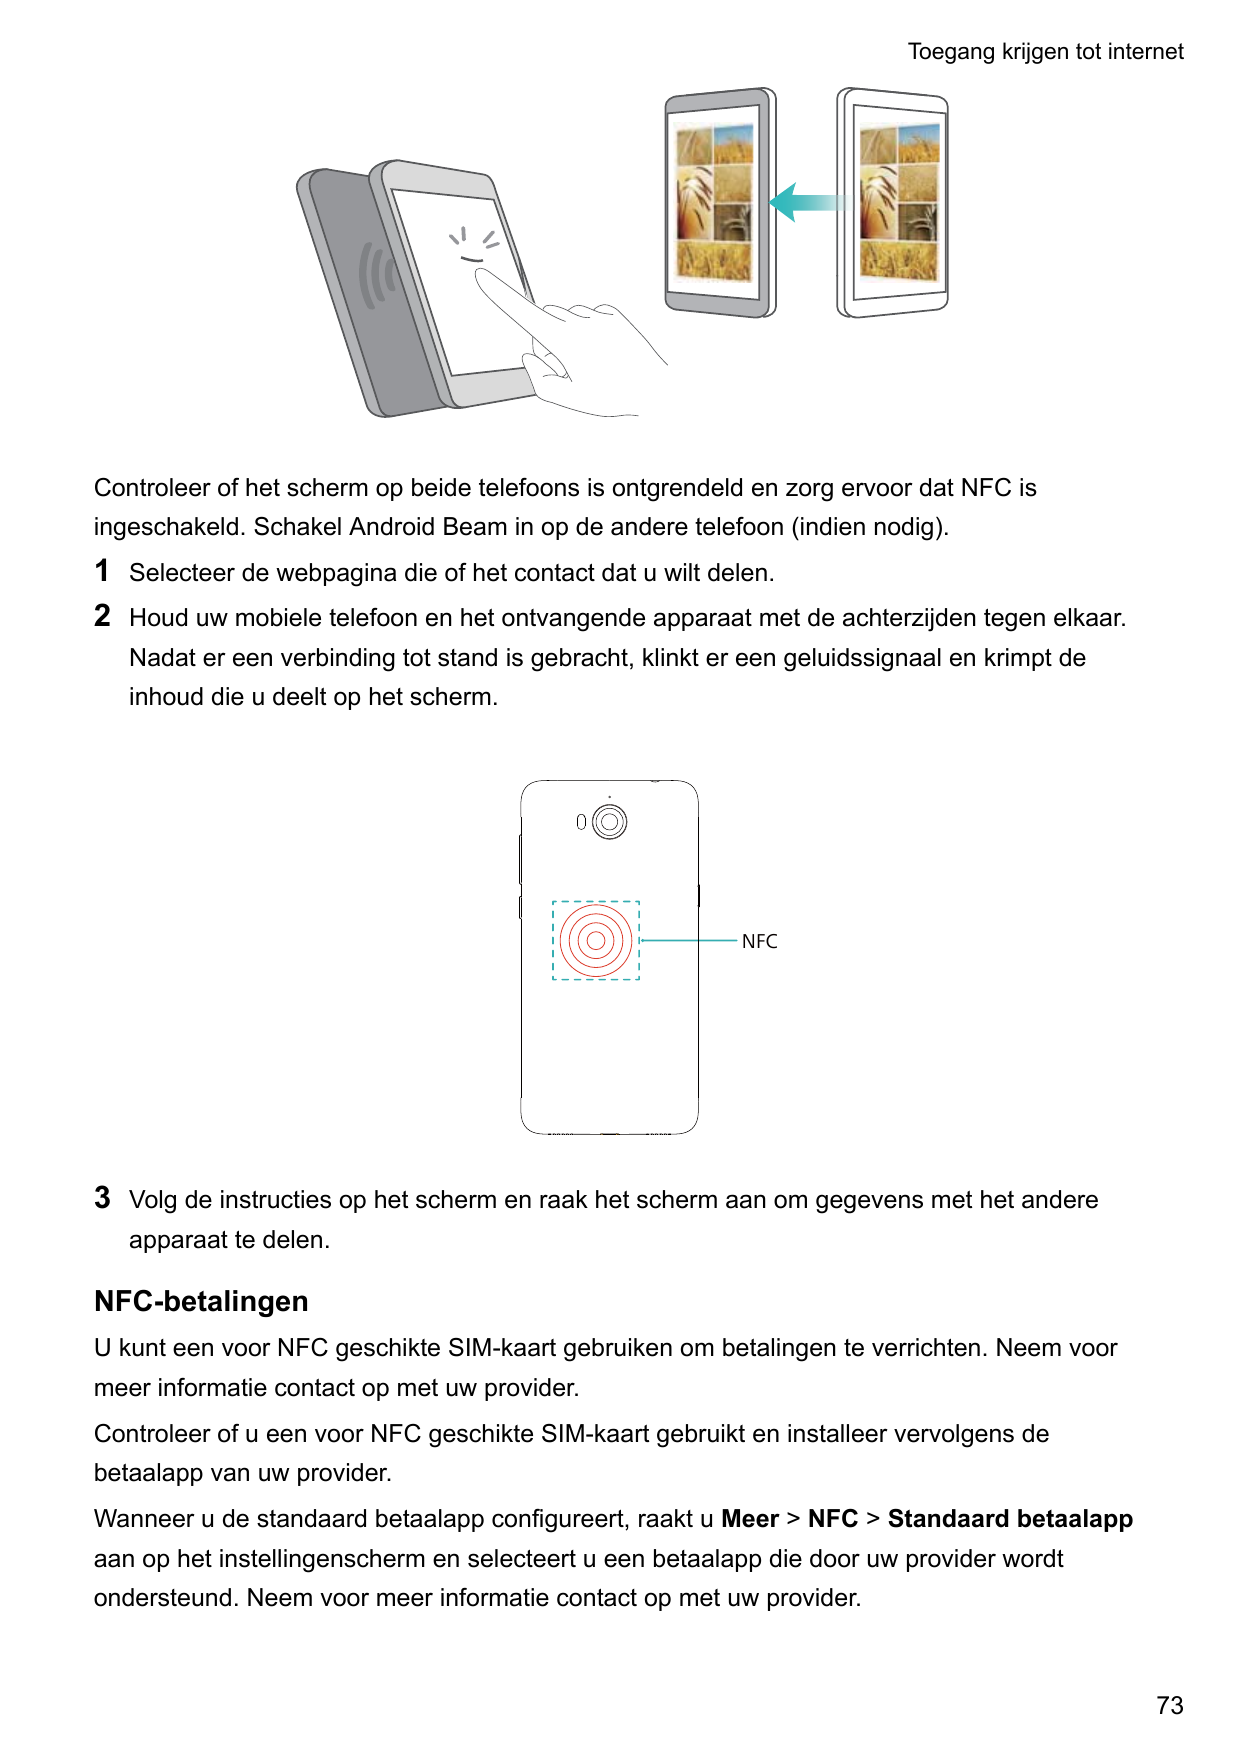 Toegang krijgen tot internetControleer of het scherm op beide telefoons is ontgrendeld en zorg ervoor dat NFC isingeschakeld. Sc